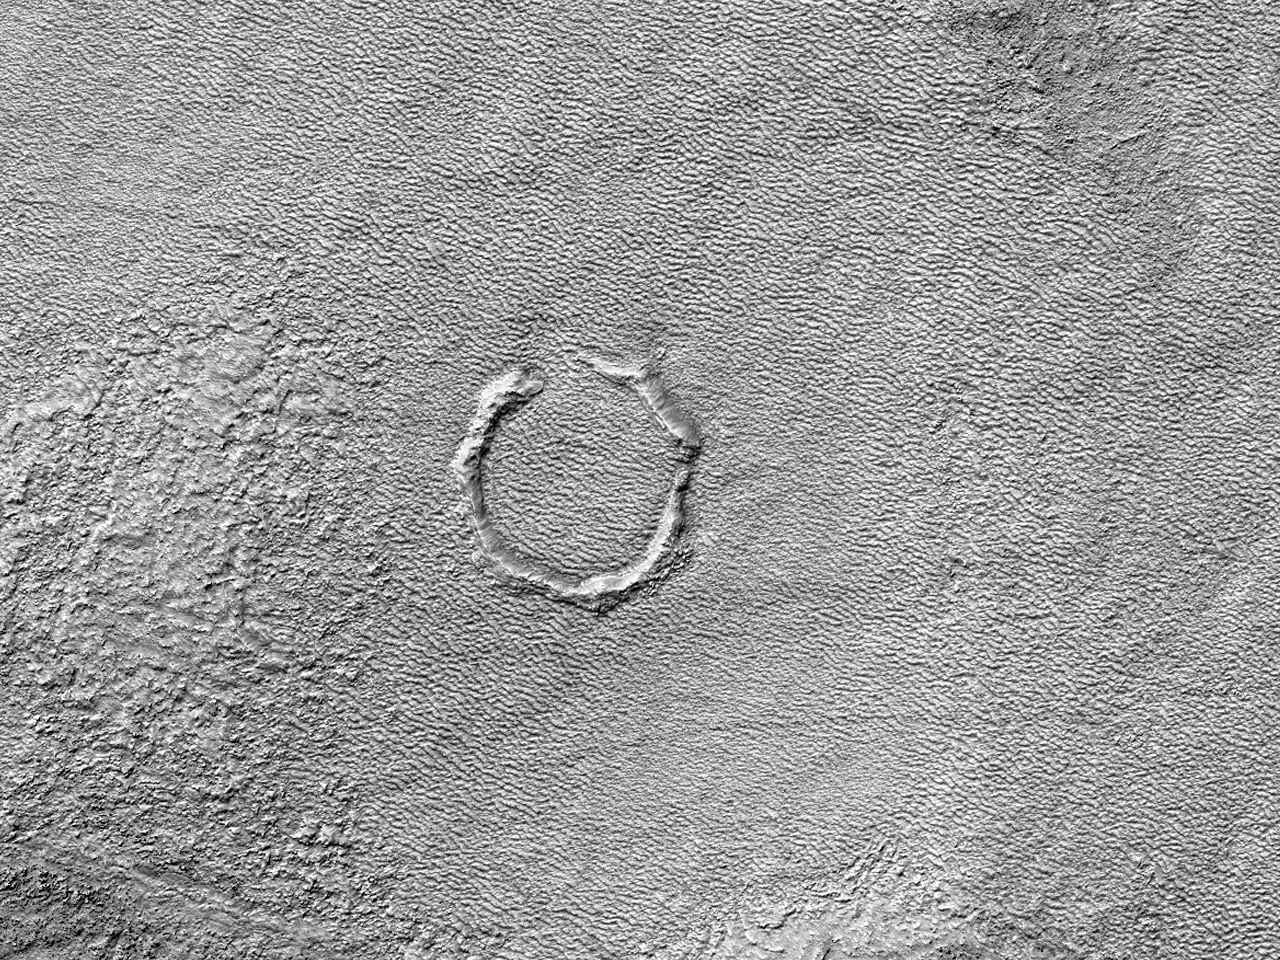 אדמה של הלאס פלניטייה (Hellas Planitia)